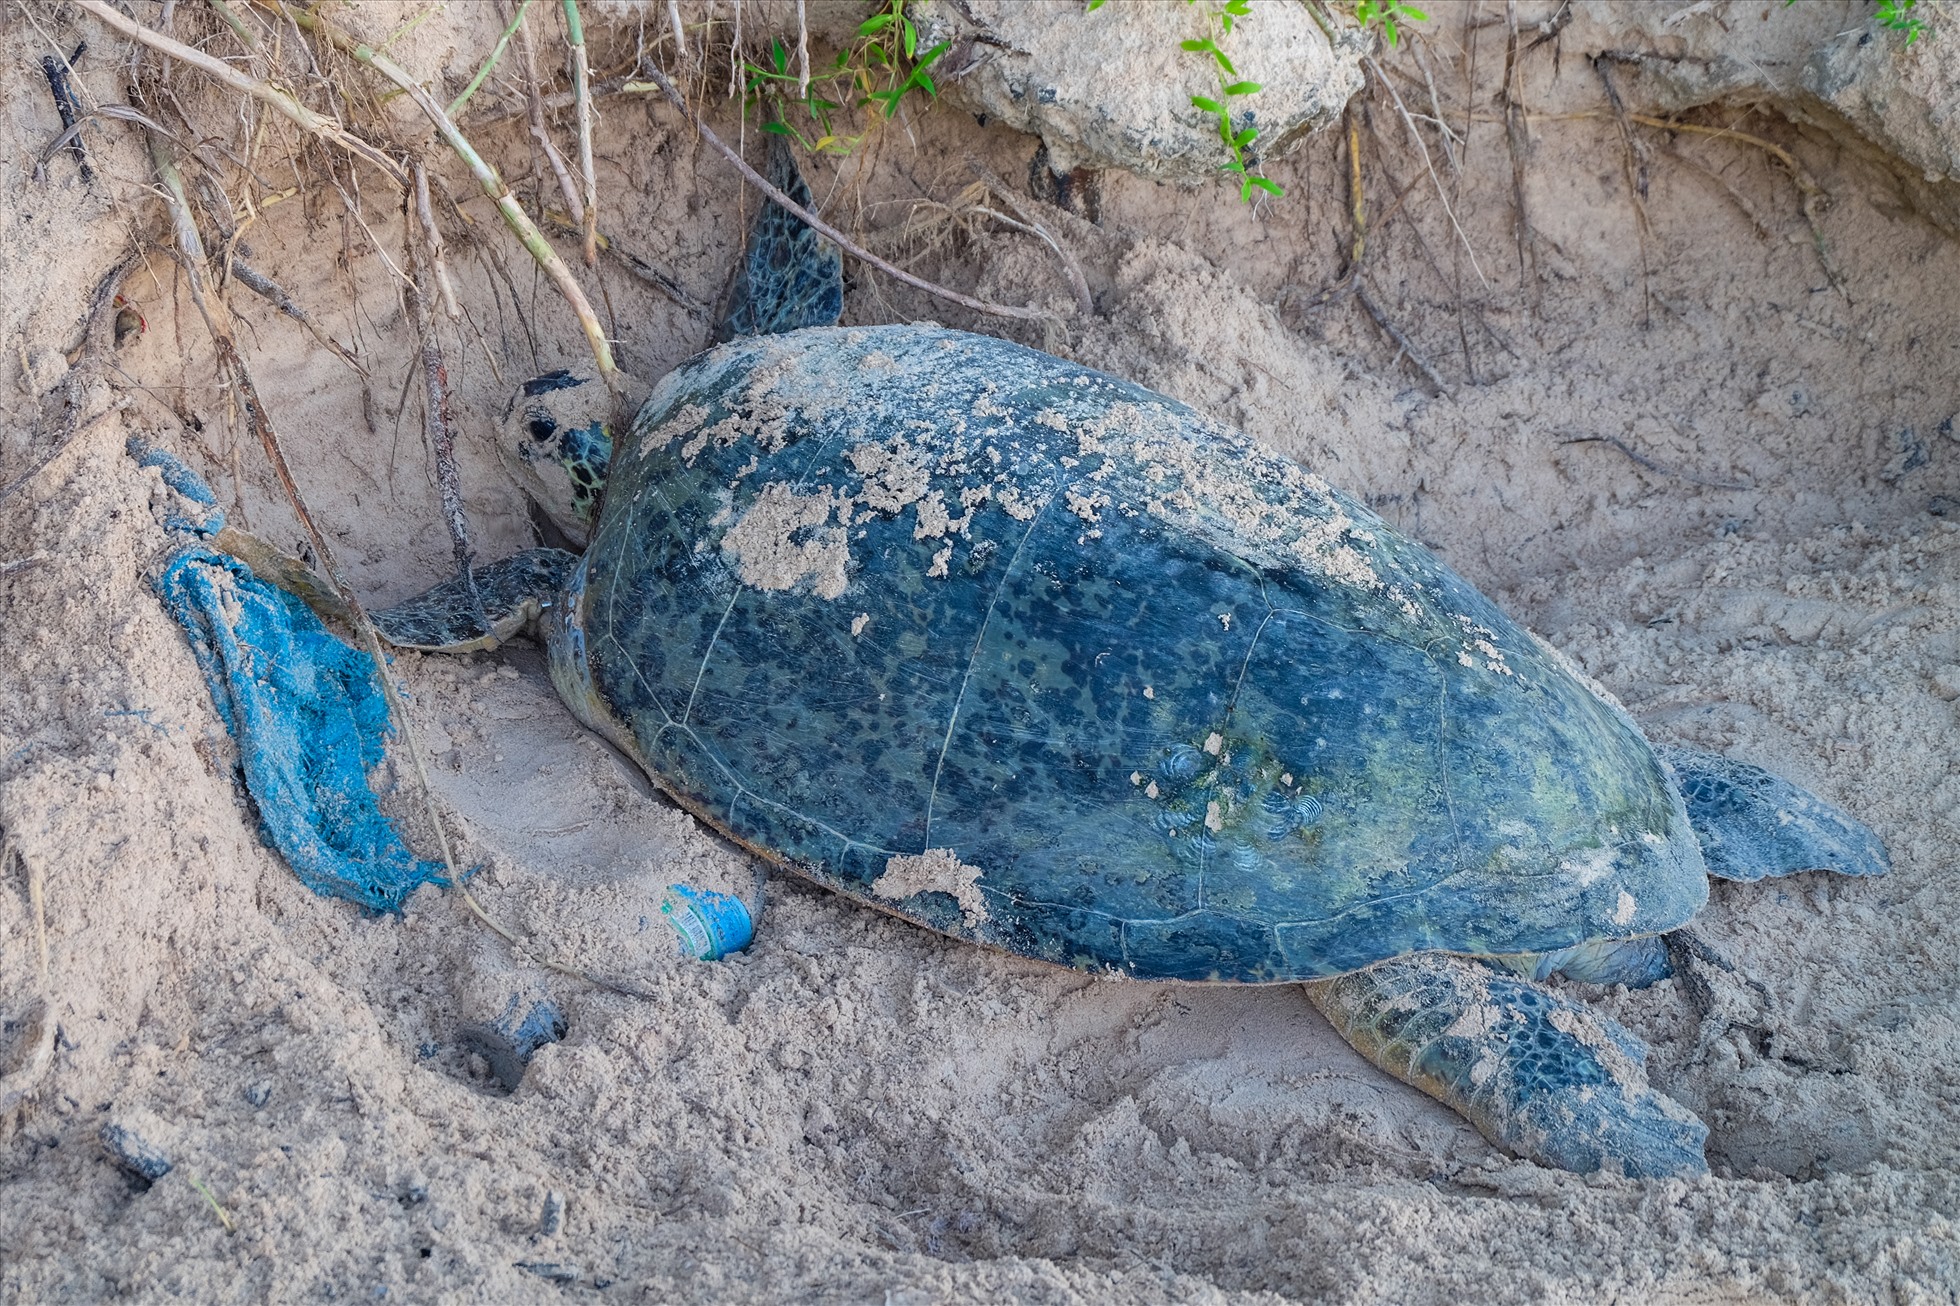 Trung bình mỗi năm, có trên 450 rùa mẹ lên các bãi cát thuộc Vườn quốc gia Côn Đảo làm tổ, đẻ trứng. Vào những tháng cao điểm mùa rùa đẻ trứng, một số bãi biển lớn như Hòn Bảy Cạnh, Hòn Tre Lớn, mỗi đêm có khoảng 30 đến 40 rùa mẹ lên làm tổ đẻ trứng với khoảng 150.000 rùa con được cứu hộ, nở và thả về biển.